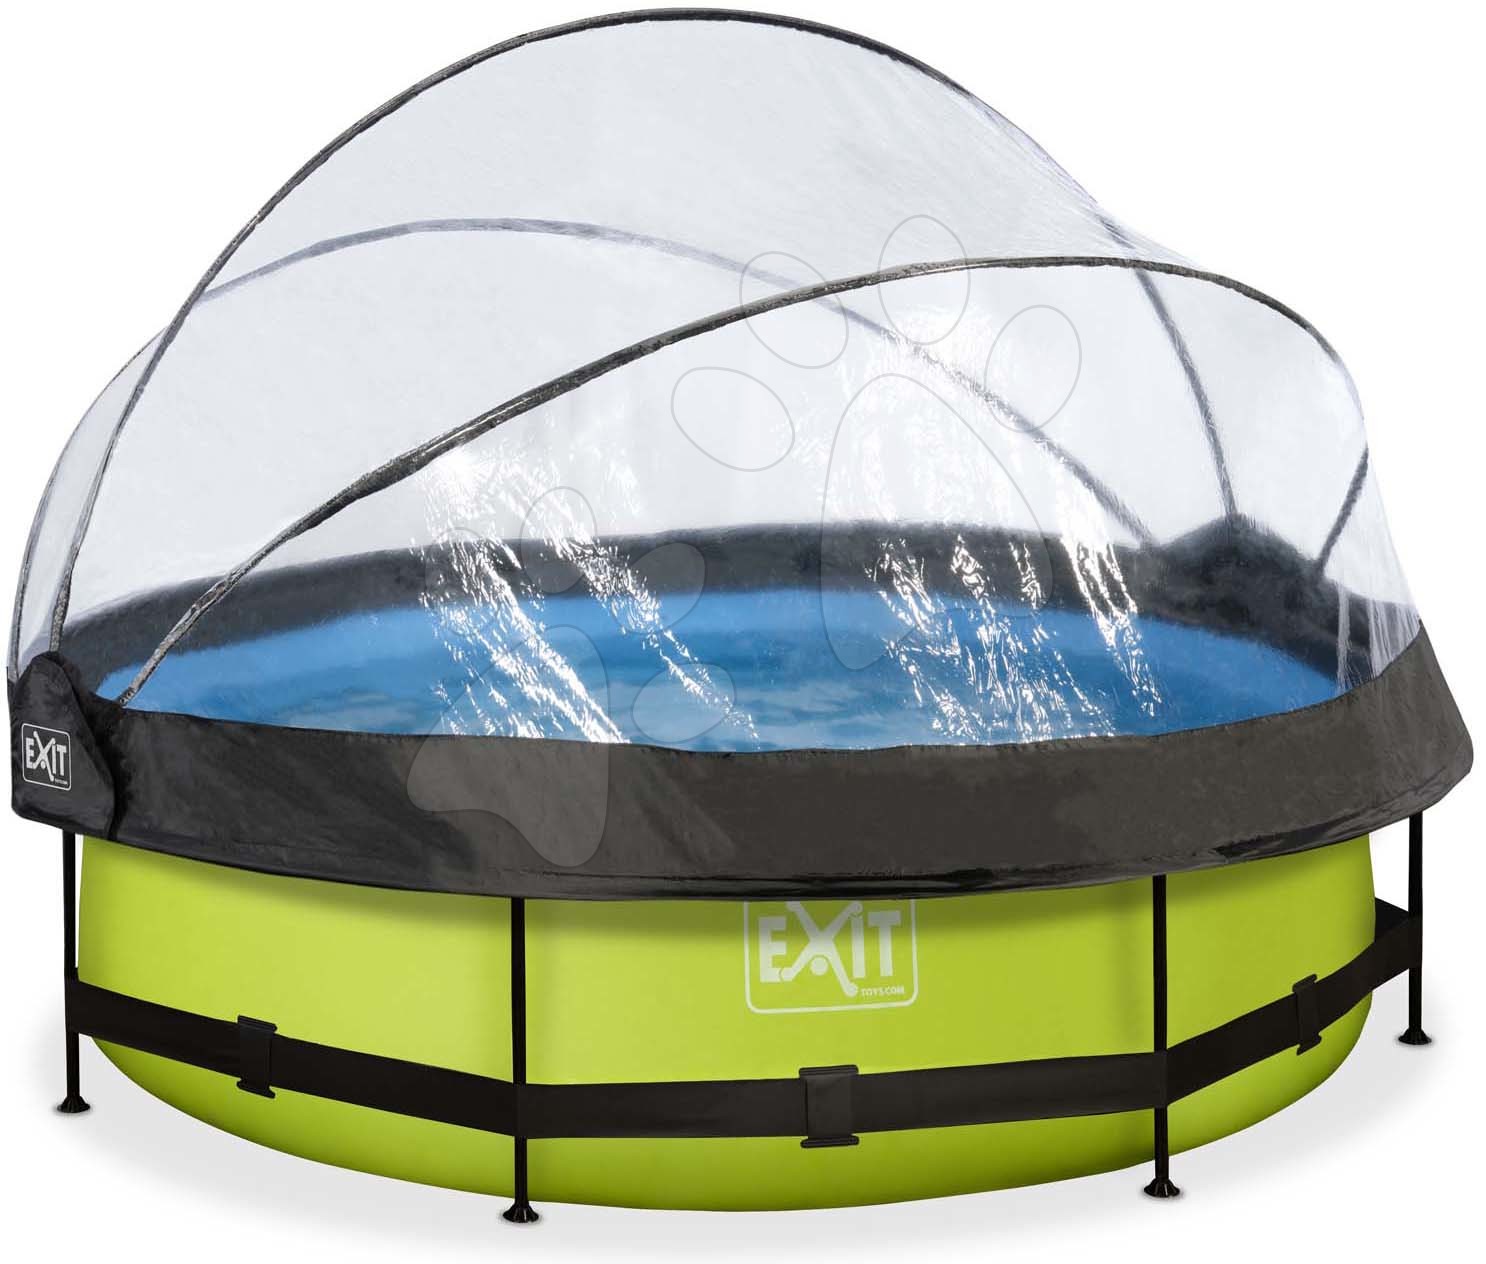 Bazén s krytom a filtráciou Lime pool Exit Toys kruhový oceľová konštrukcia 300*76 cm zelený od 6 rokov